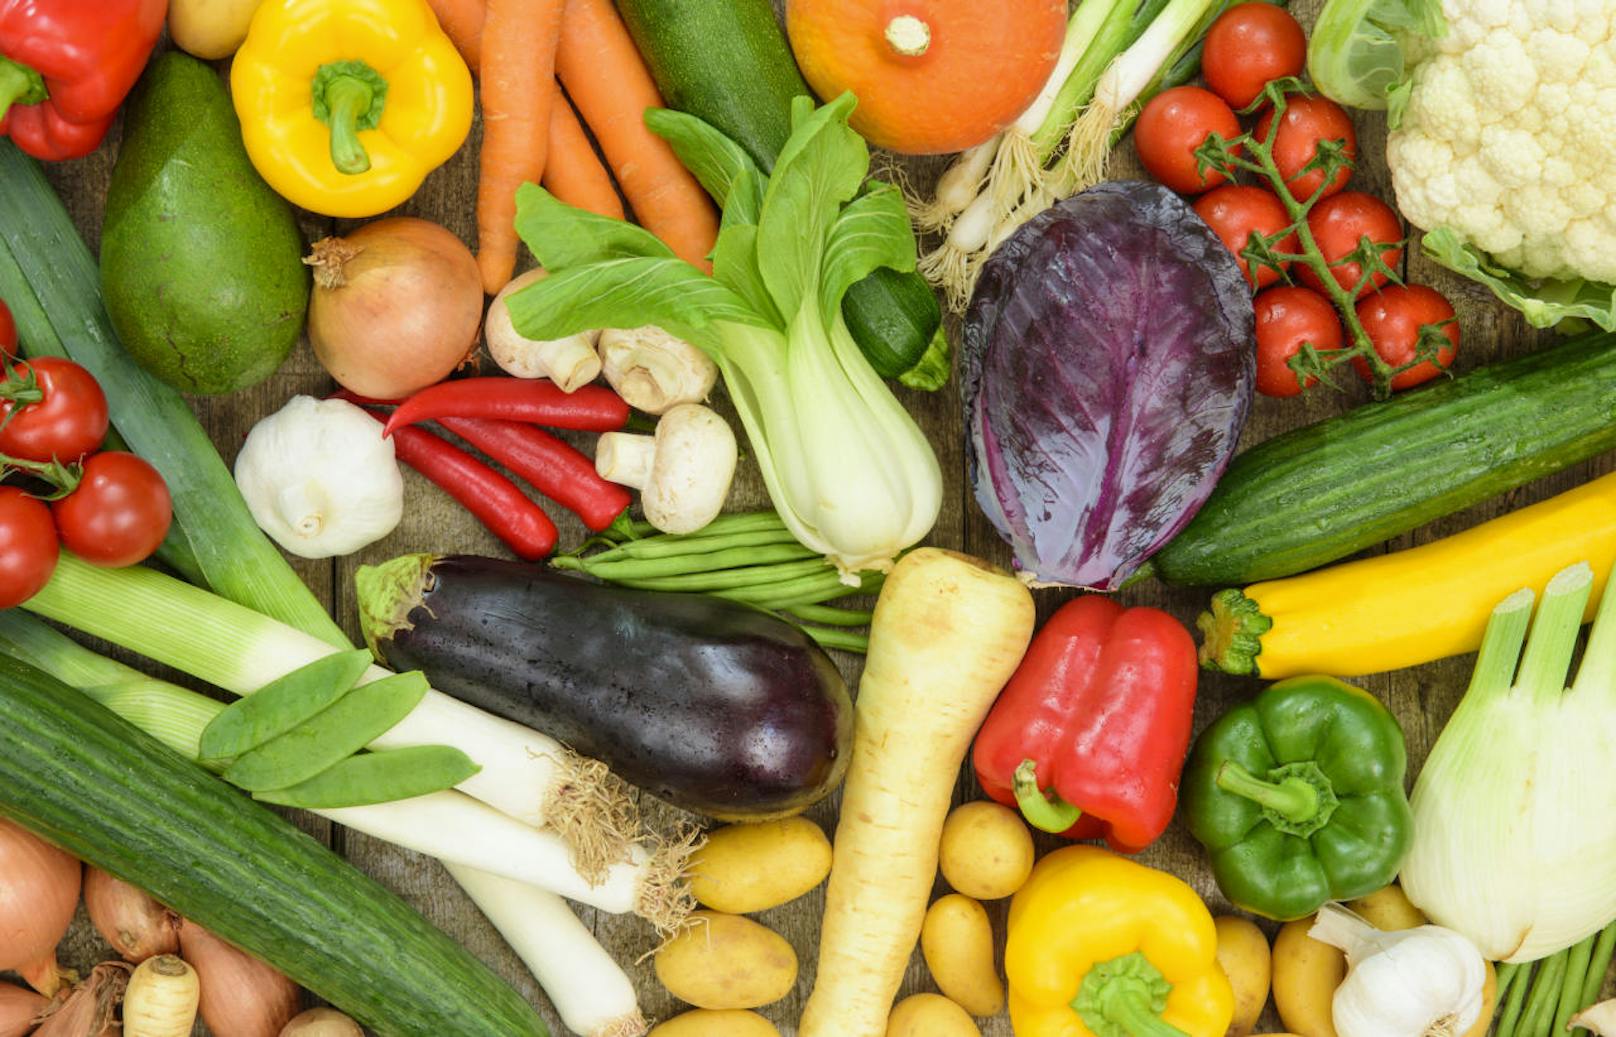 Rohes Gemüse enthält viele Vitamine und Mineralstoffe - deswegen kann es der Gesundheit nicht schaden. Diese Annahme wird von einer neuen Studie jedoch widerlegt.